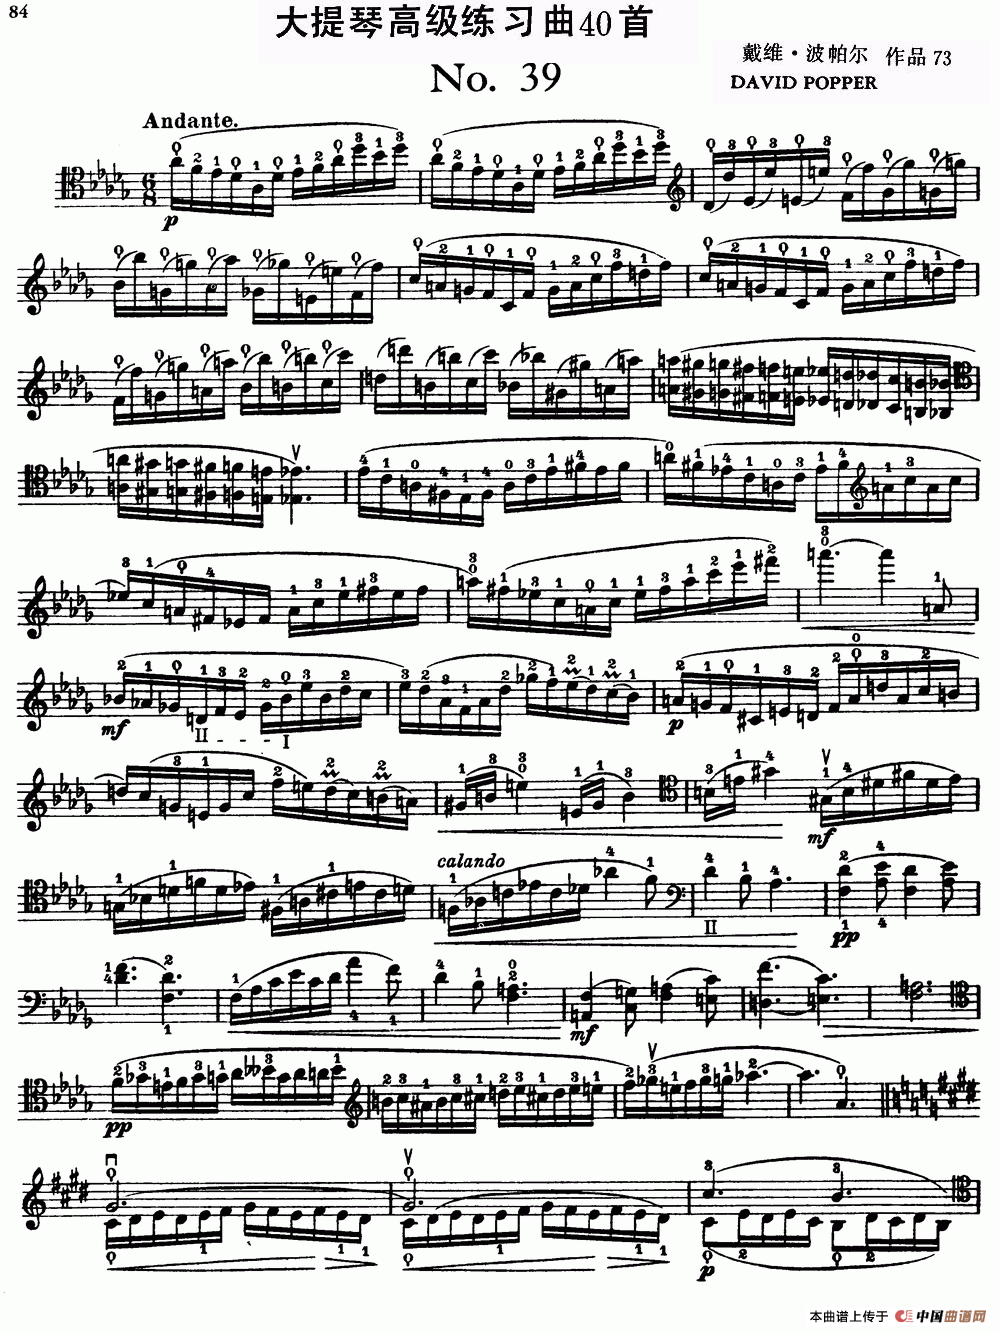 大提琴高级练习曲40首 No.39